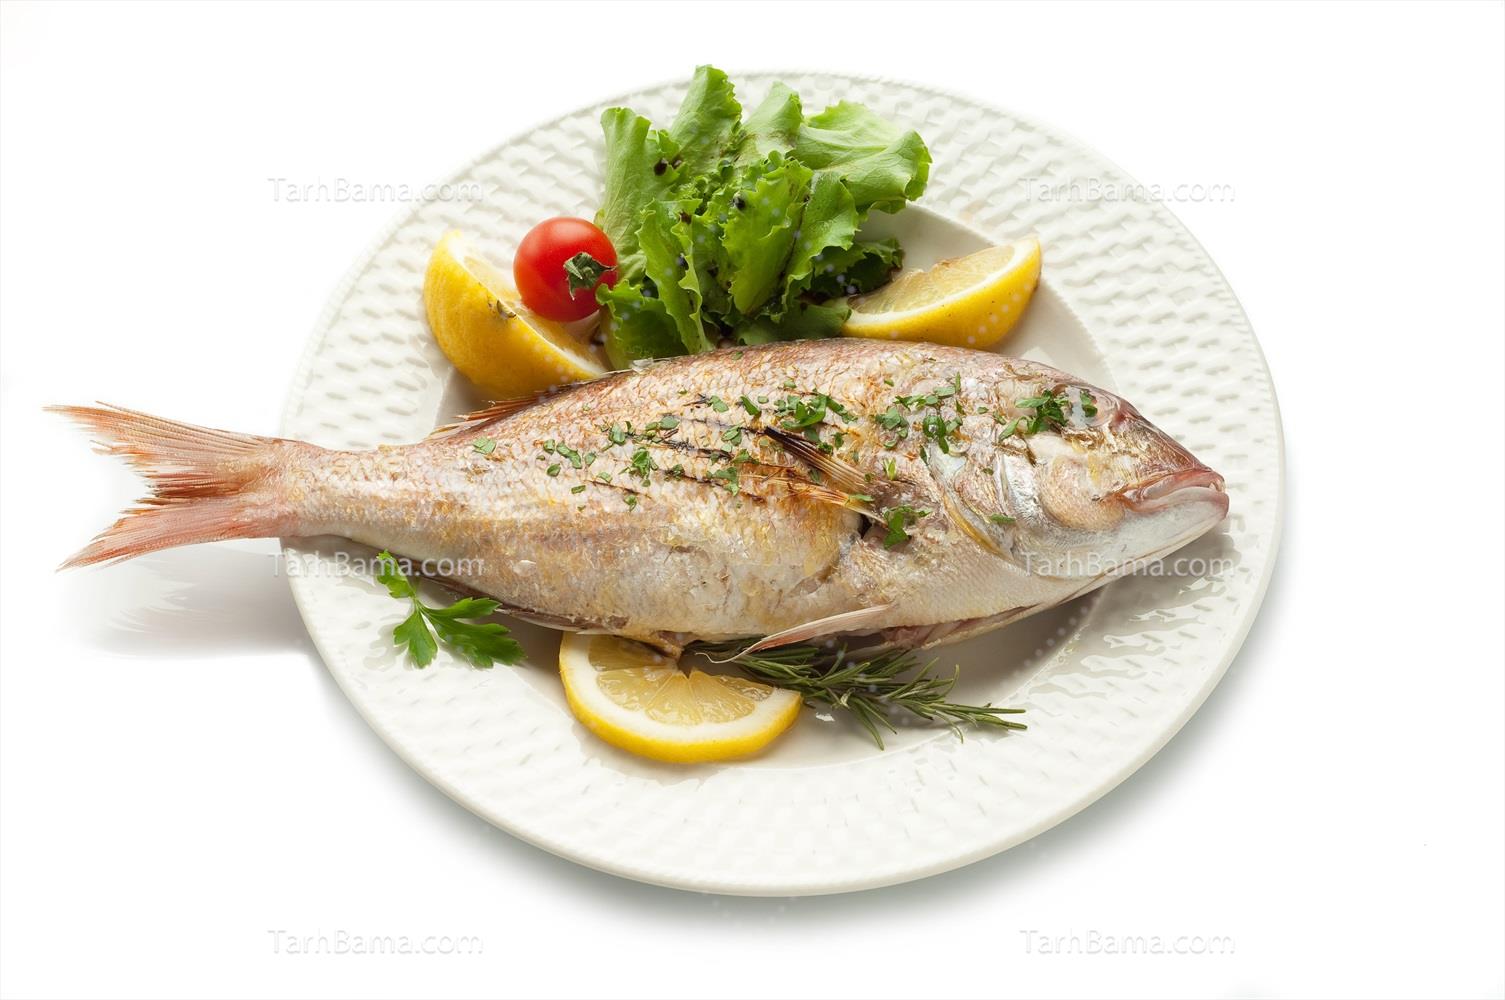 تصاویر گوشت، مرغ و ماهی